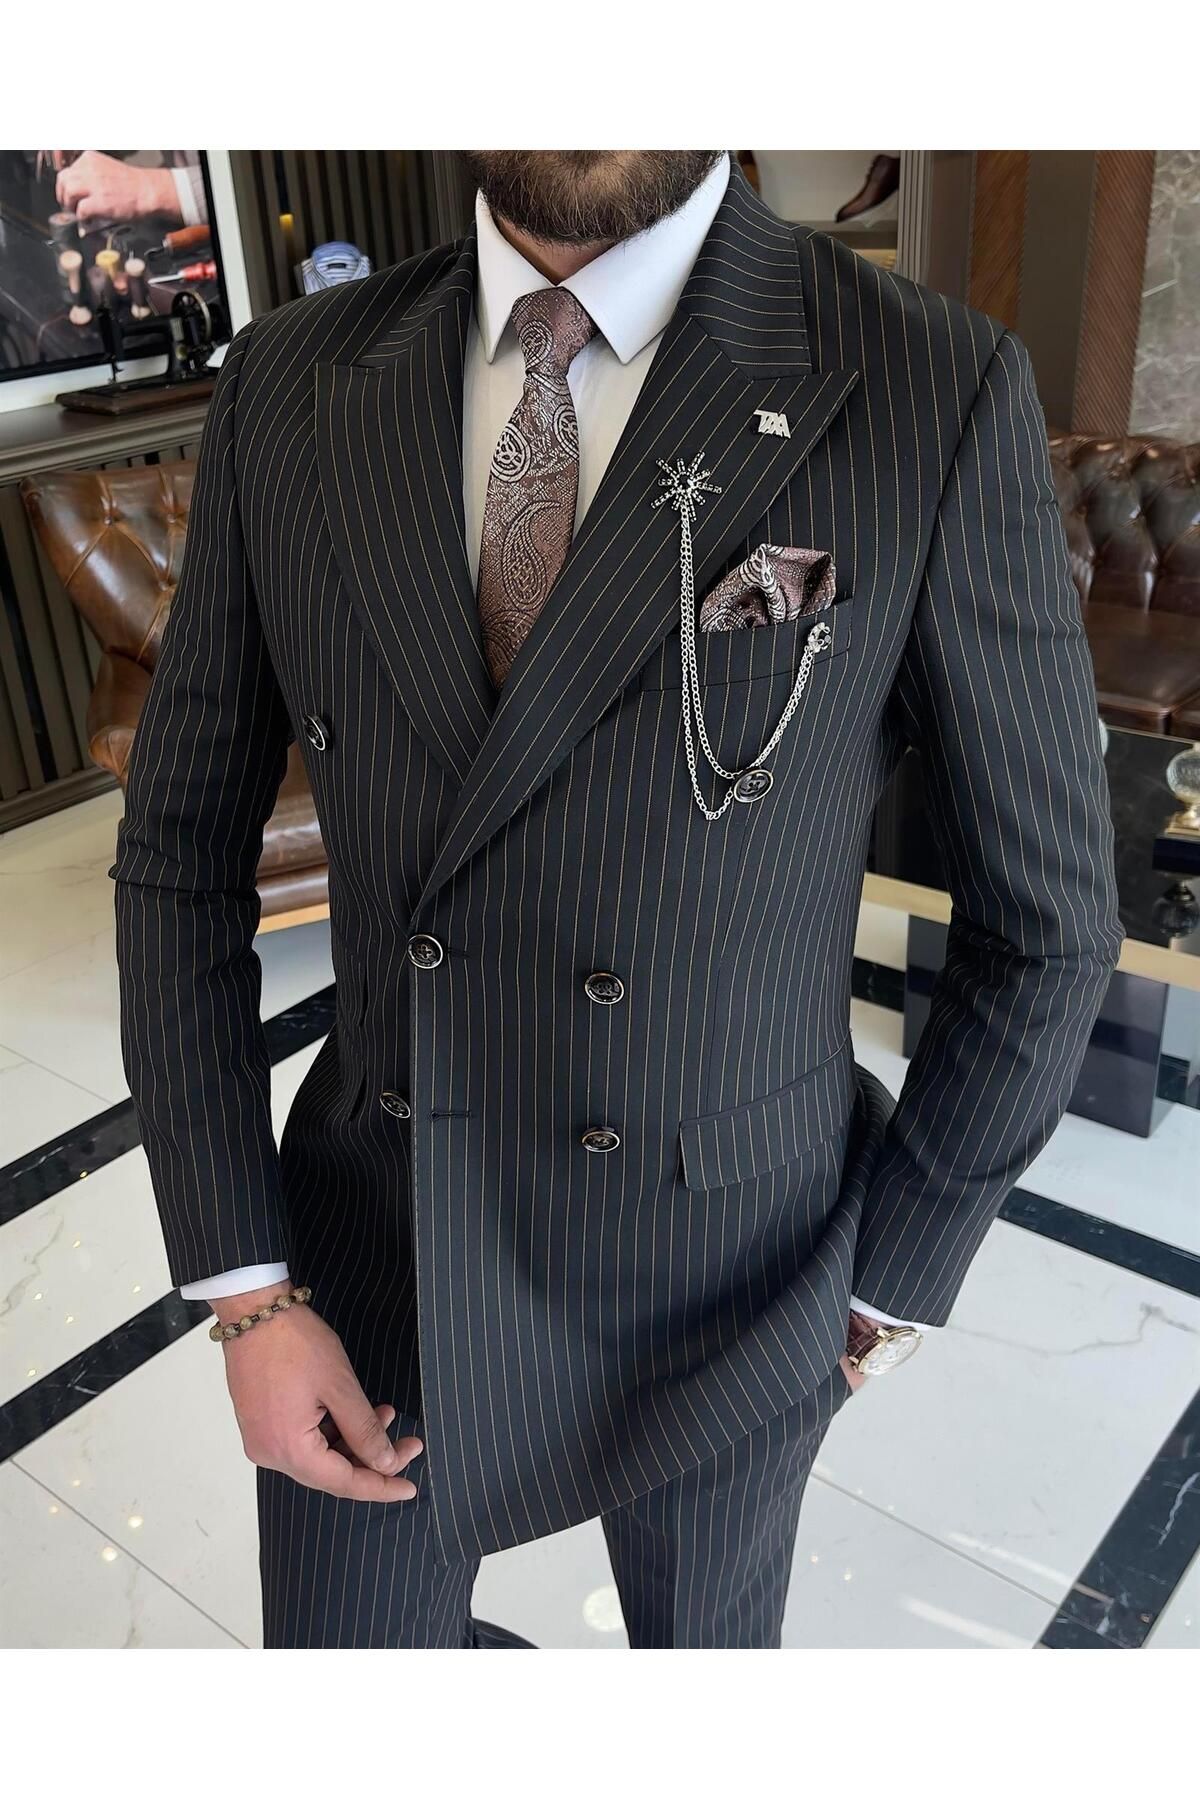 TerziAdemAltun İtalyan stil slim fit çizgili kruvaze ceket pantolon takım elbise siyah T9554